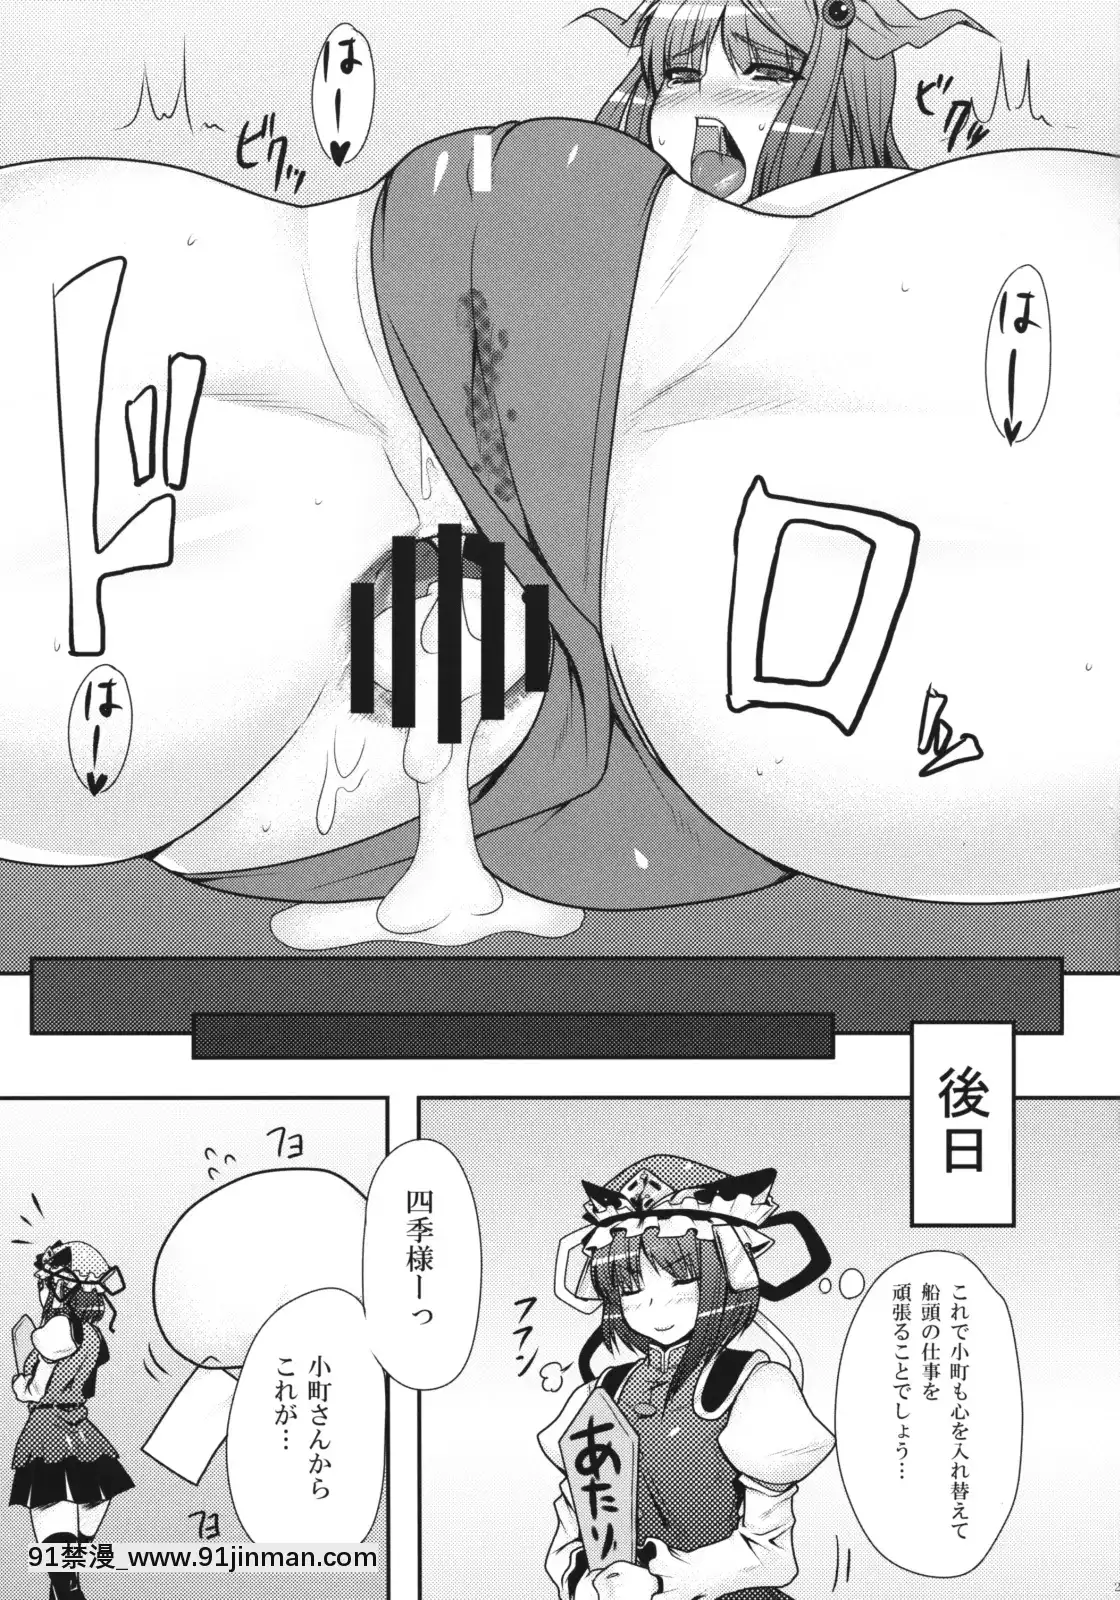 (Ví dụ 6) Bắt cóc nữ tu cảnh sát. (Dự án Oriental)【hentai công chúa ori】